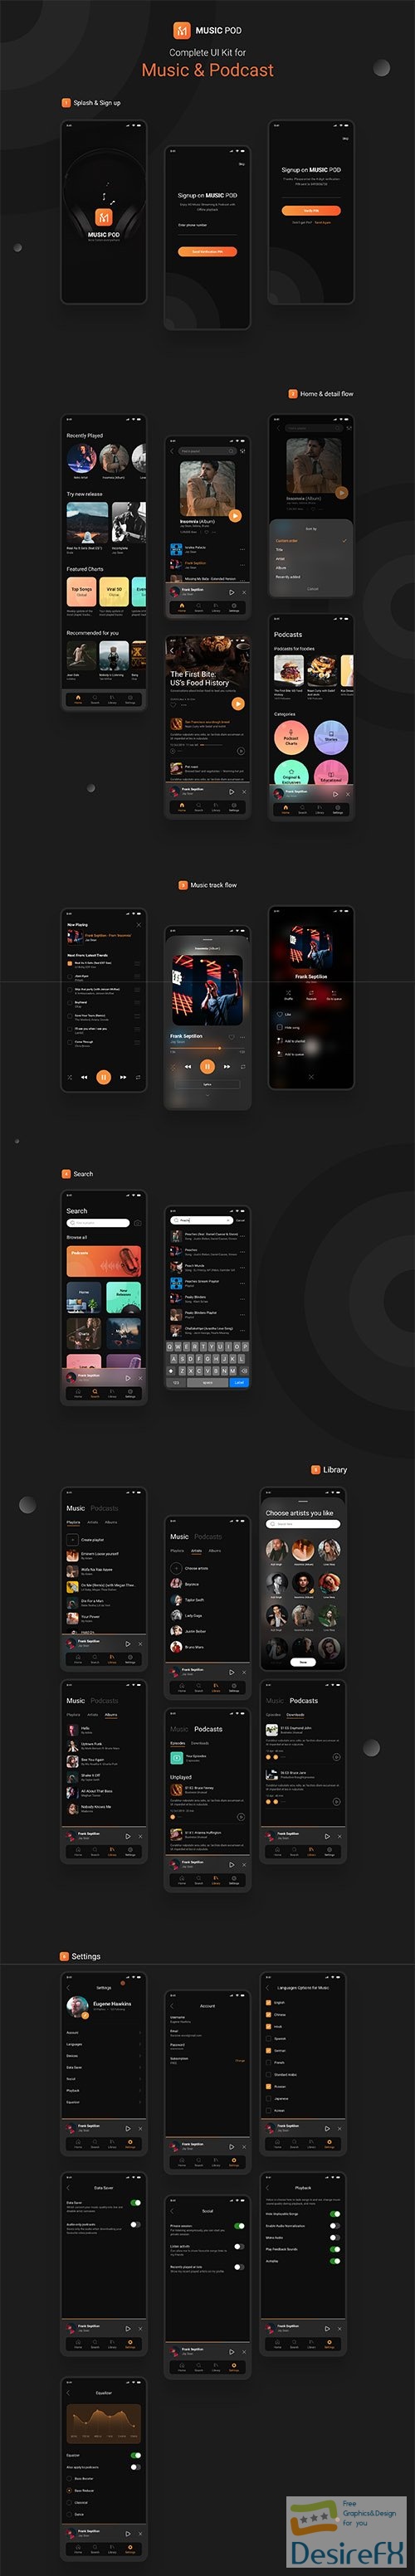 MusicPod App - Complete UI Kit - UI8